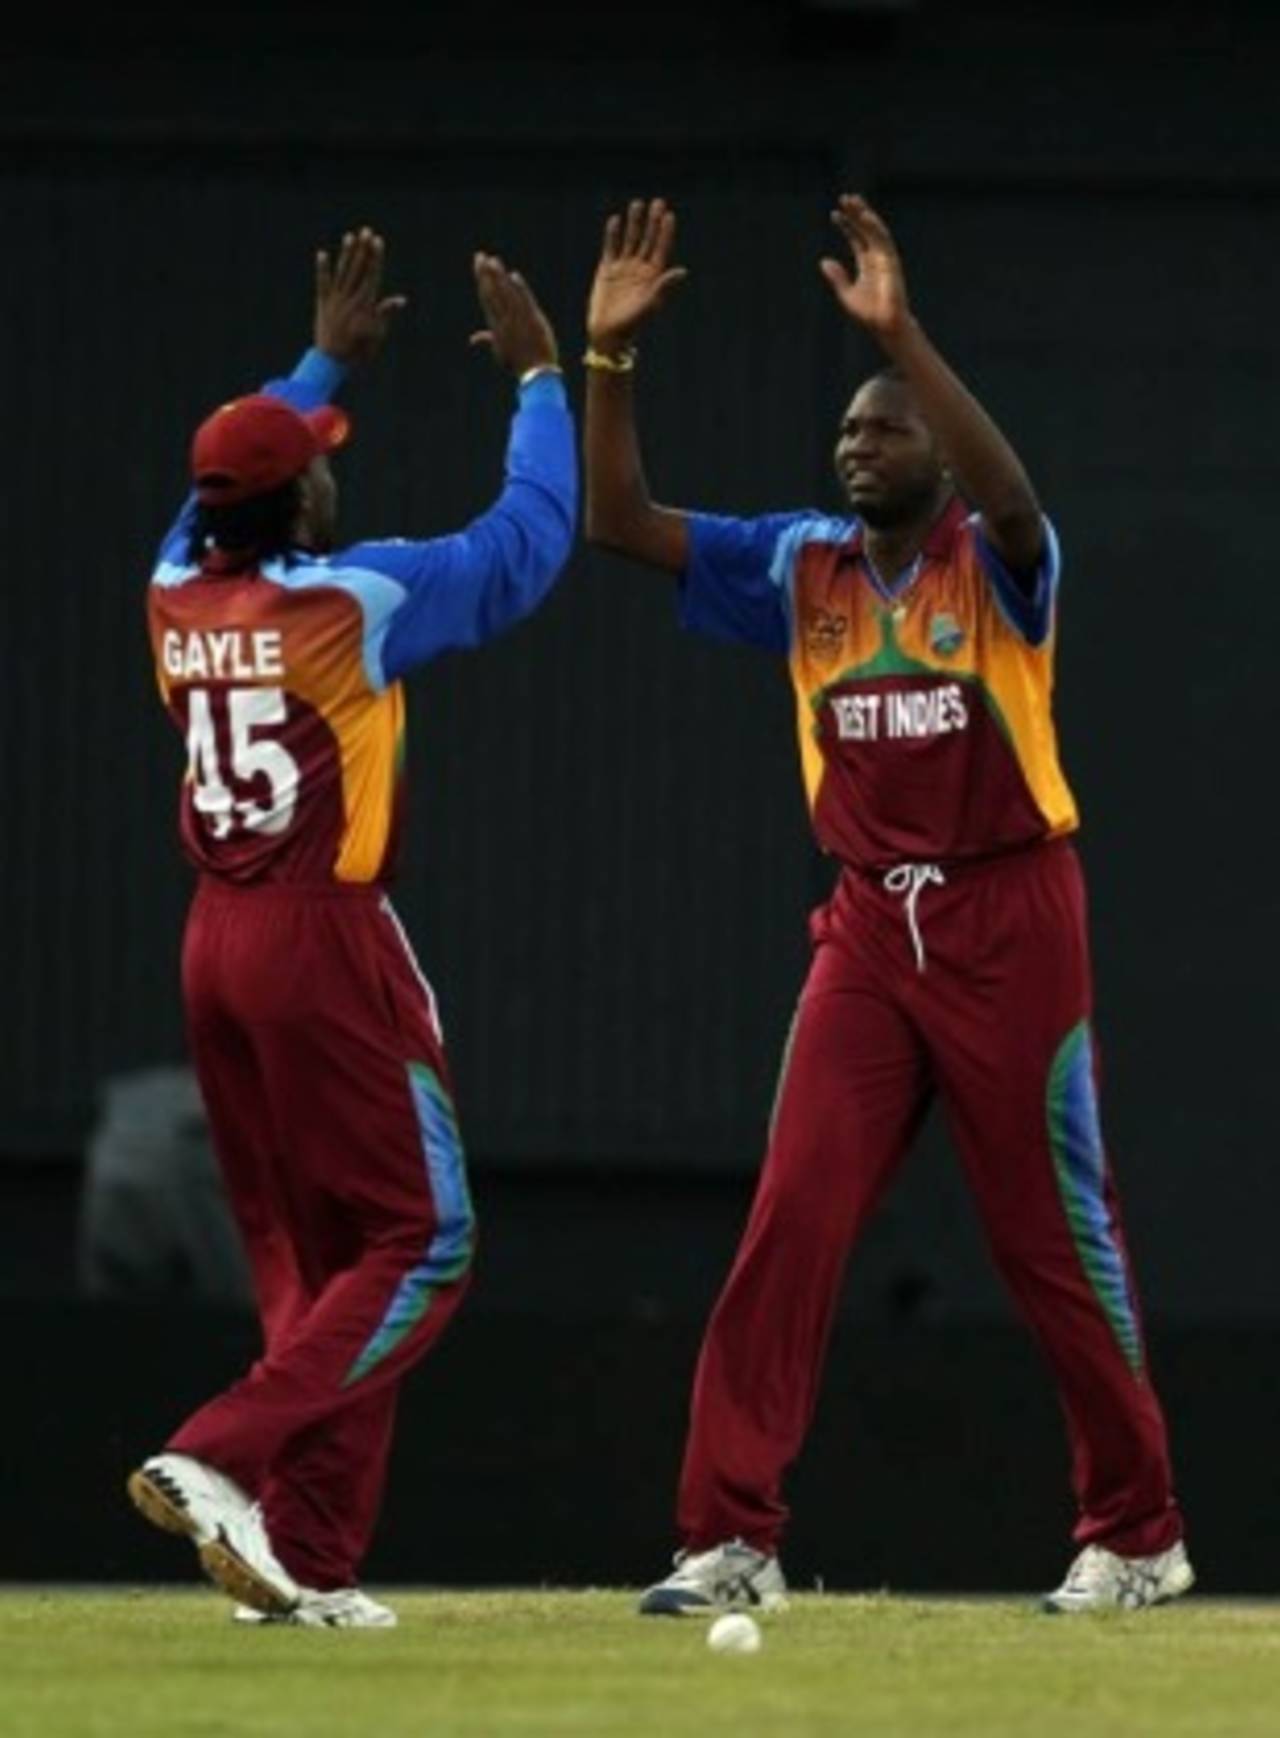 Sulieman Benn celebrates a wicket, West Indies v New Zealand, ICC World Twenty20 warm-up, Guyana, April 28, 2010